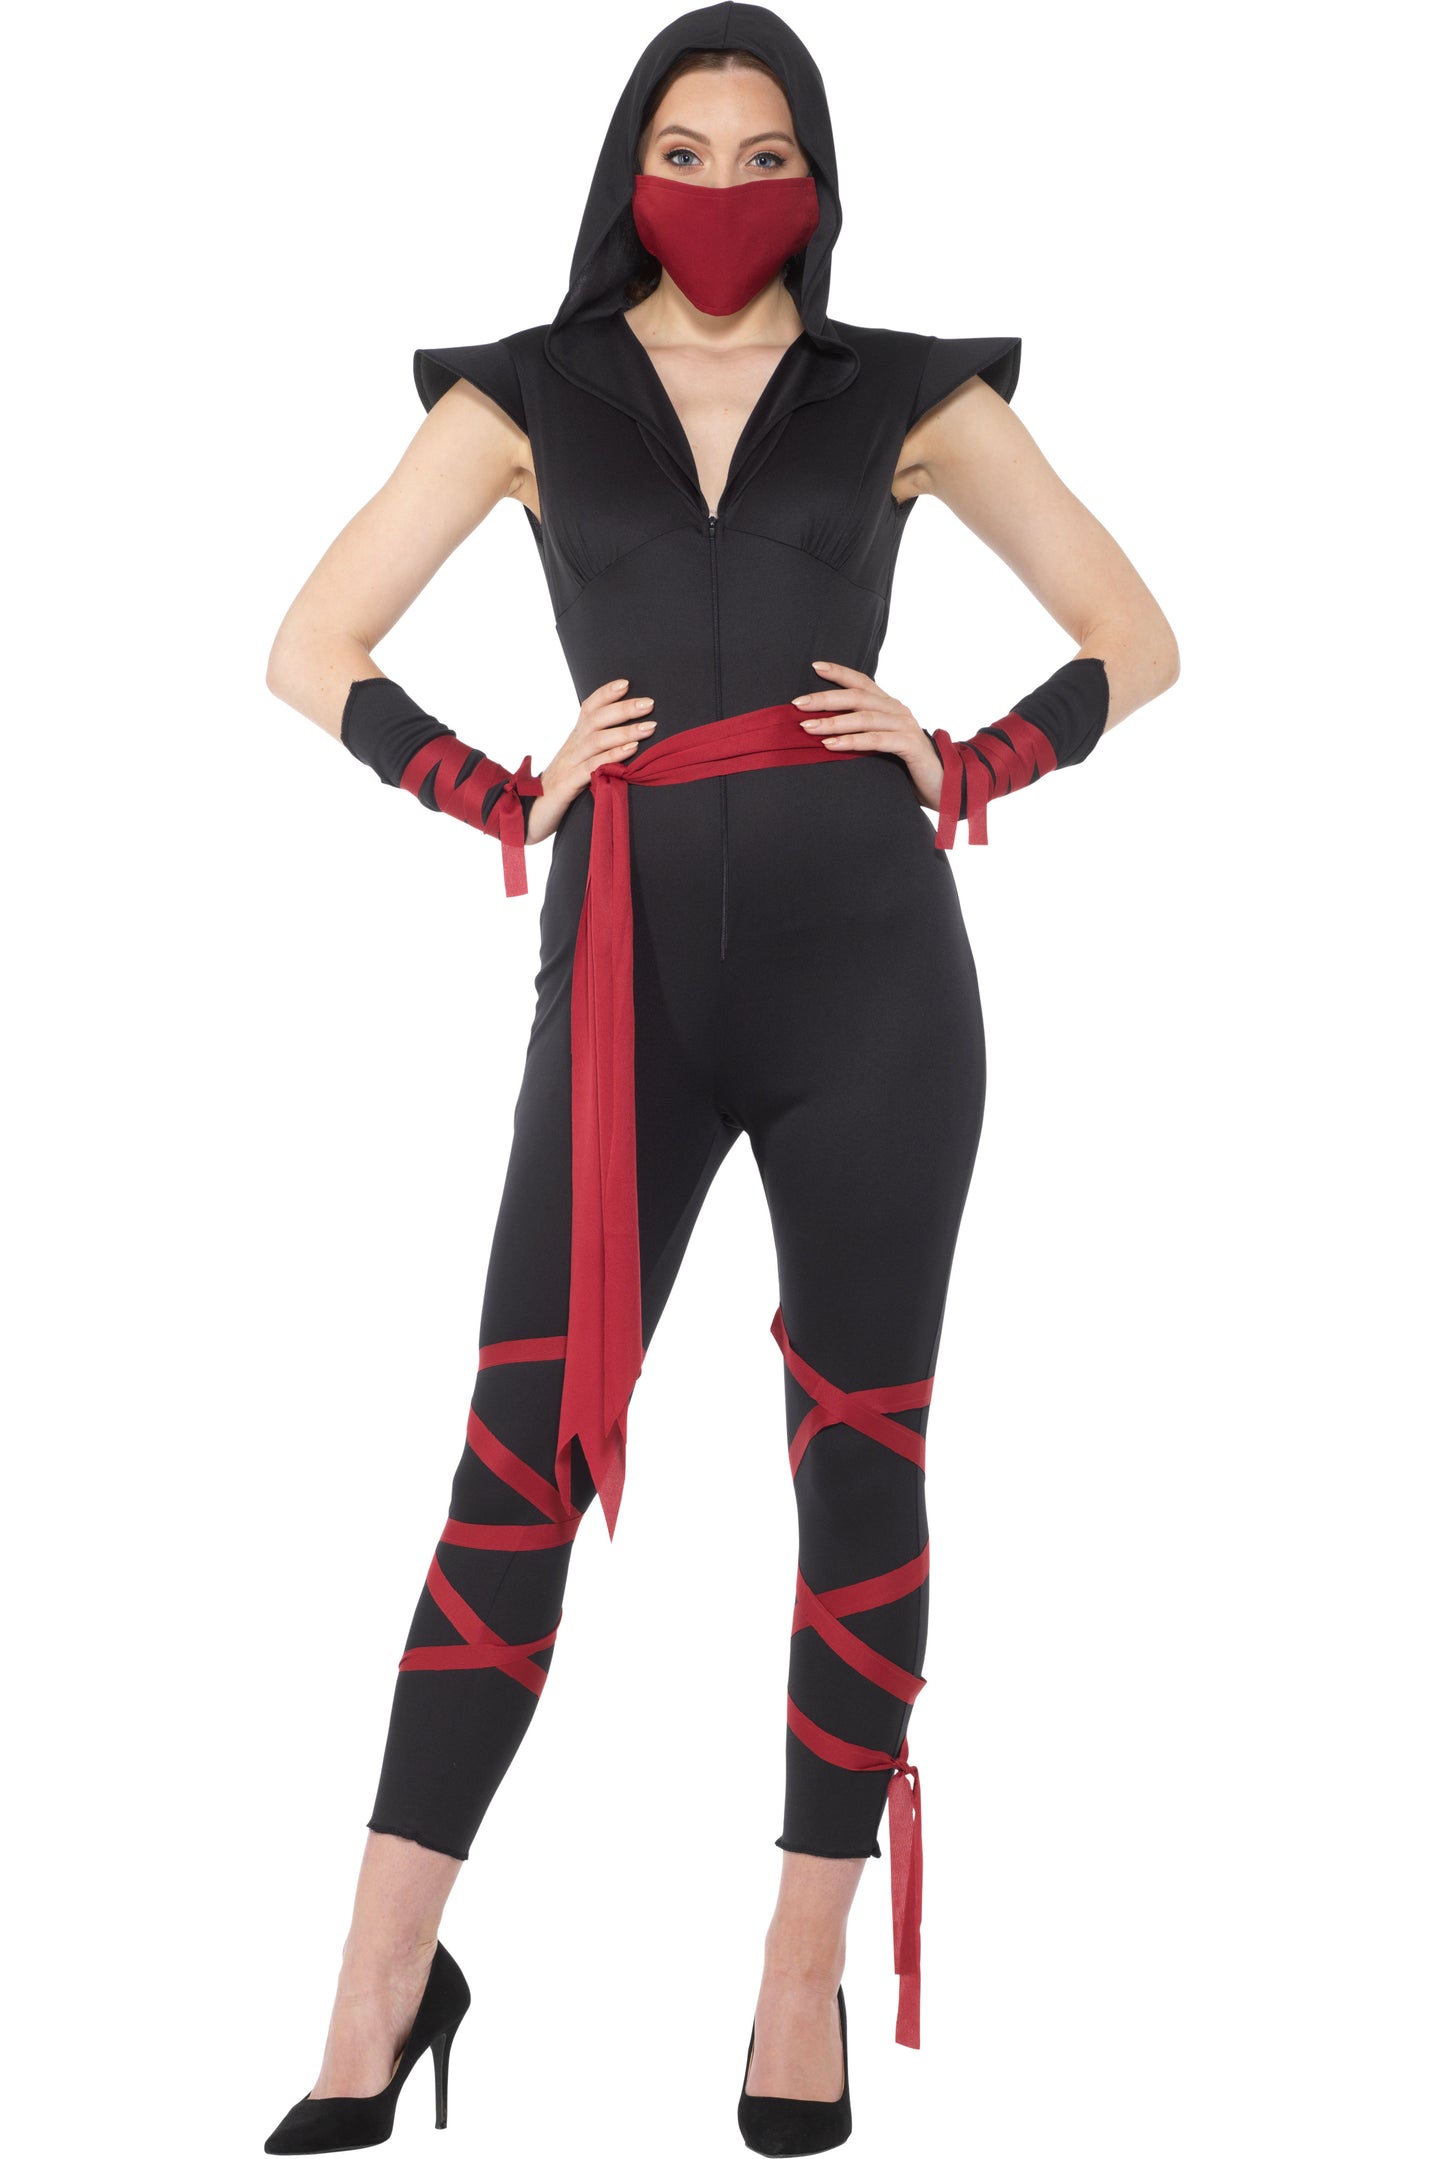 Women's Sexy Ninja Costume